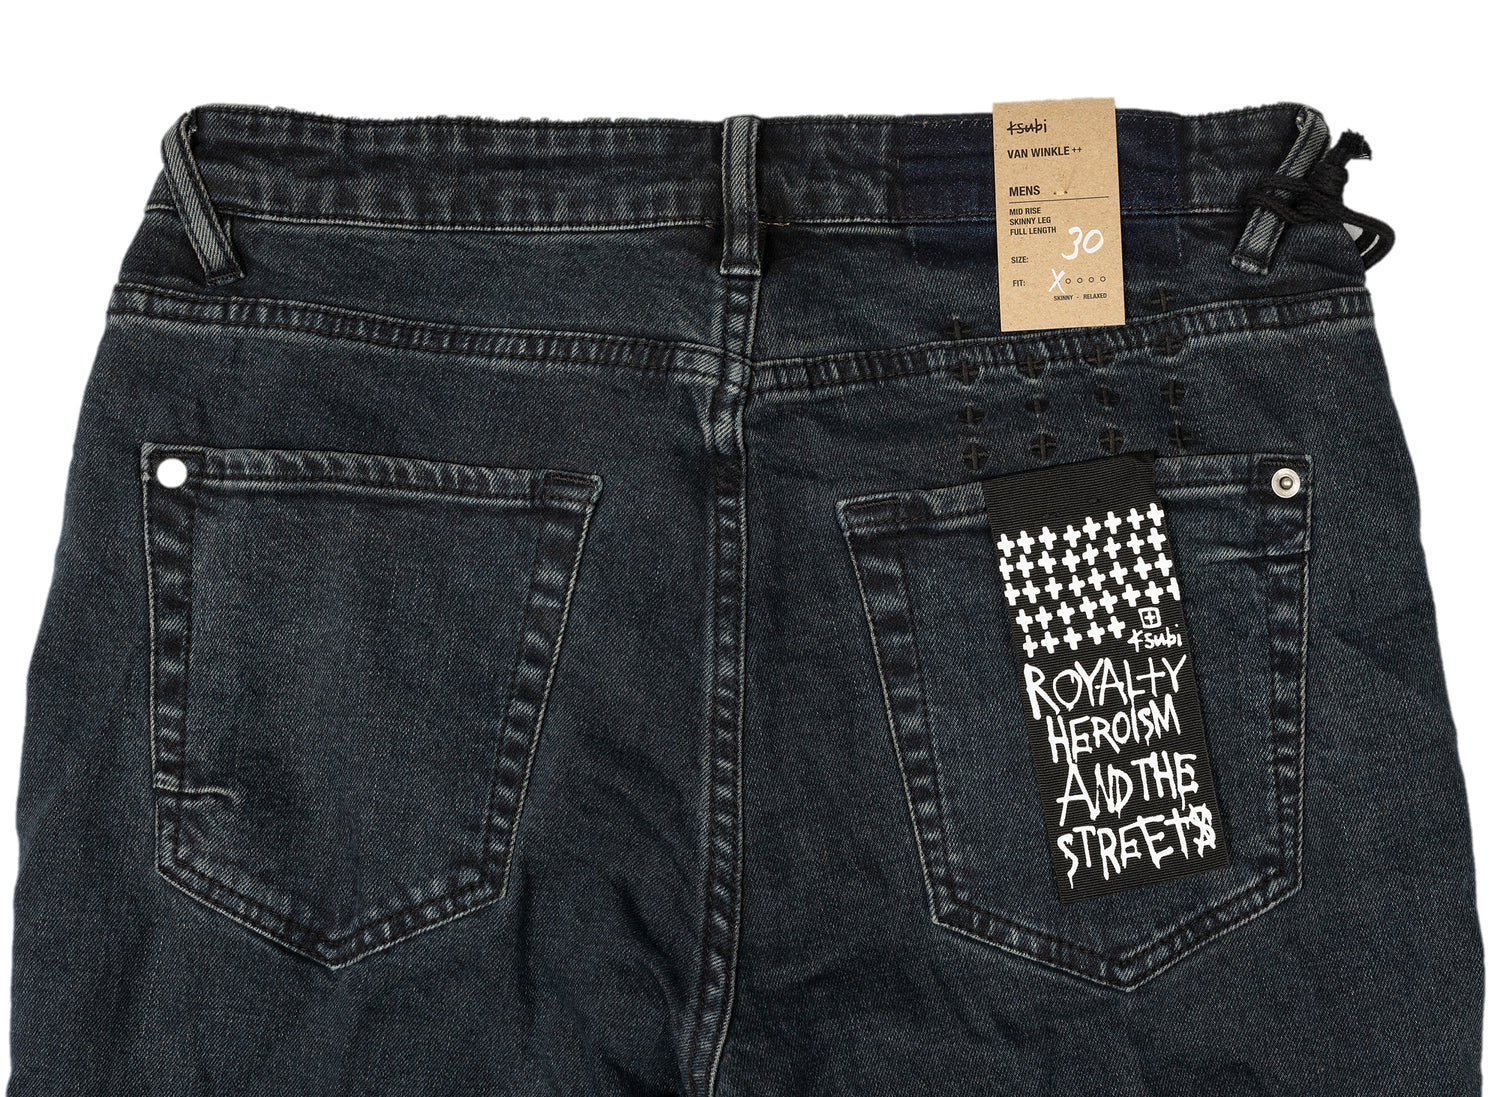 Van Winkle Re-Dye Jeans – Oneness Boutique